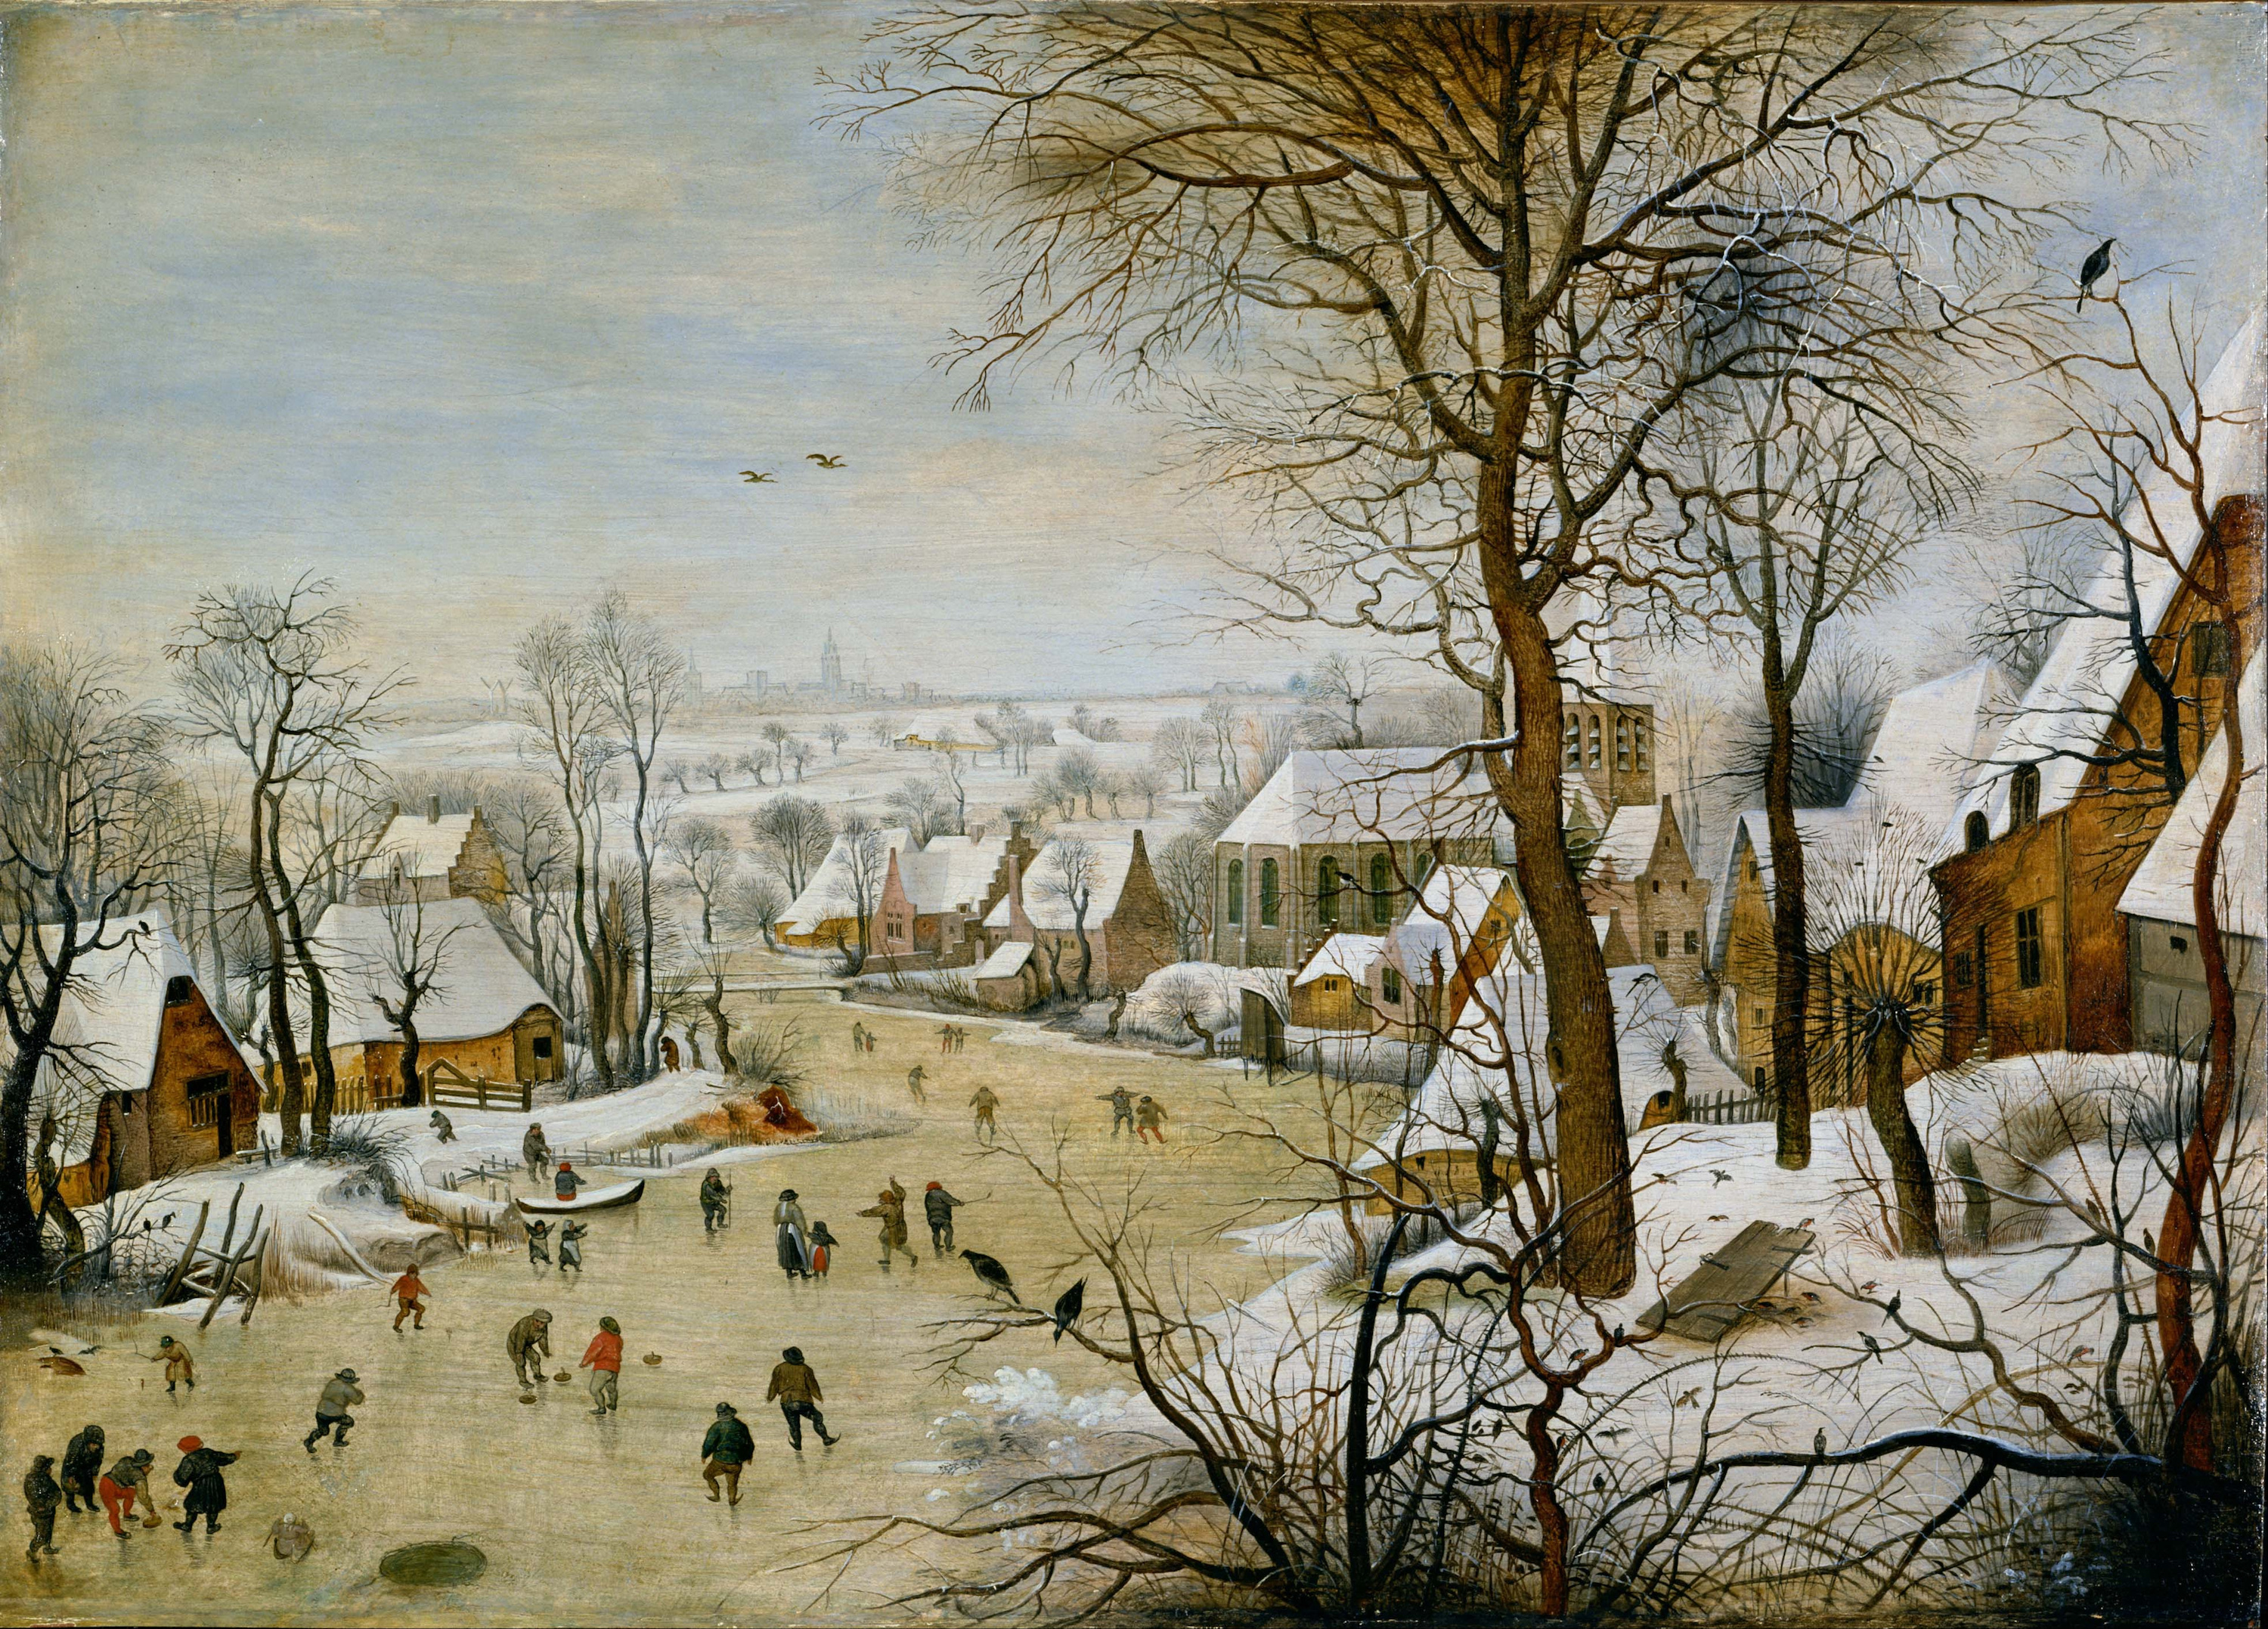 Зимовий пейзаж із скейтерами та пасткою для птахів by Pieter Bruegel the Elder - 1565 - 37 x 55,5 см 